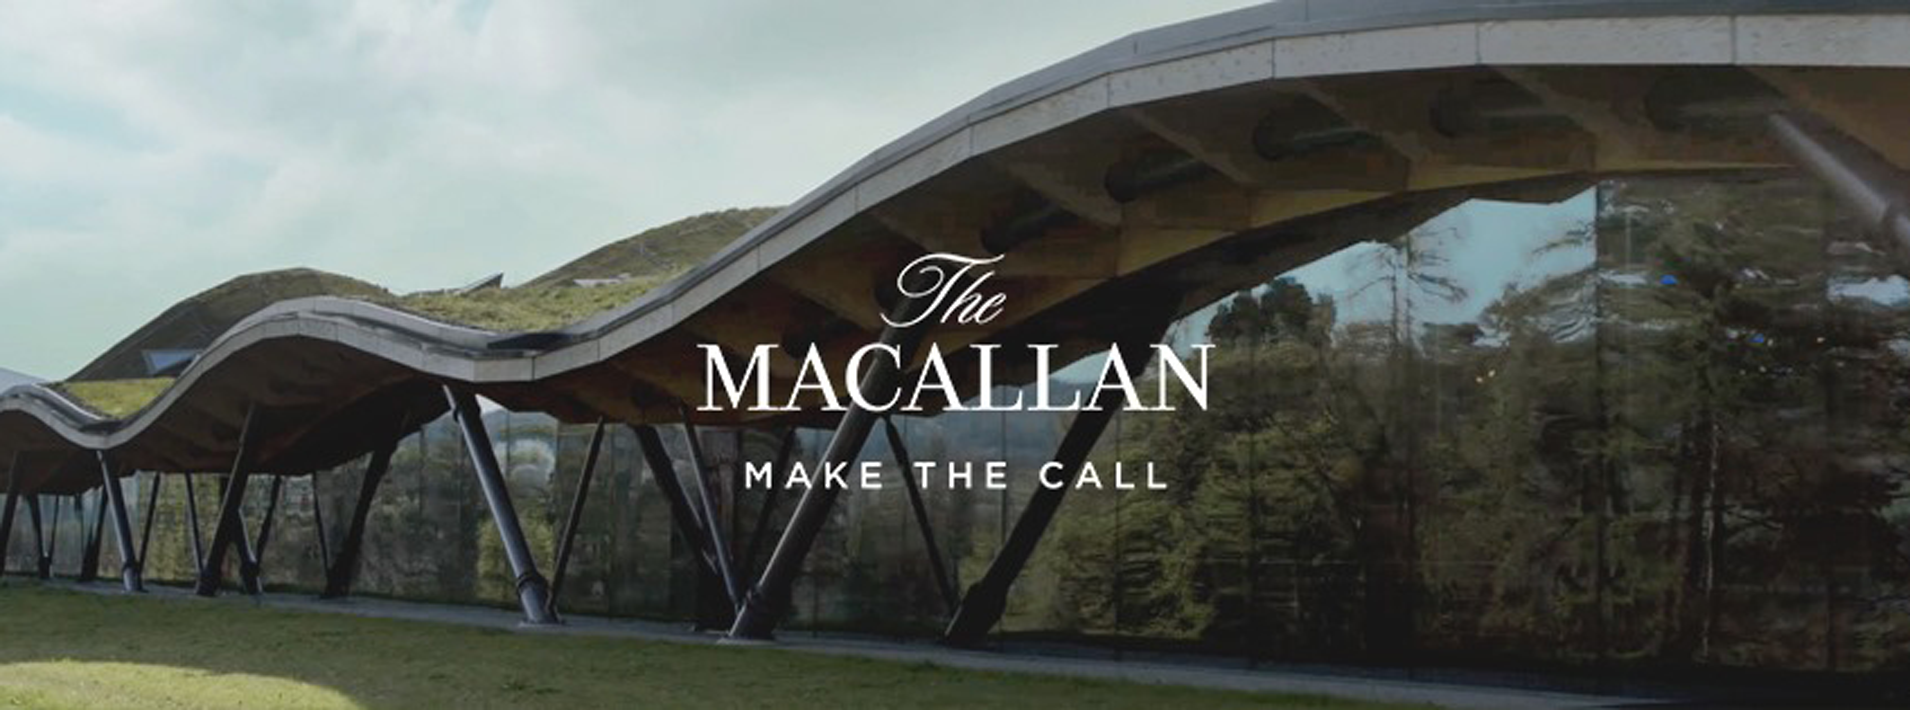 The Macallan Distillers Ltd